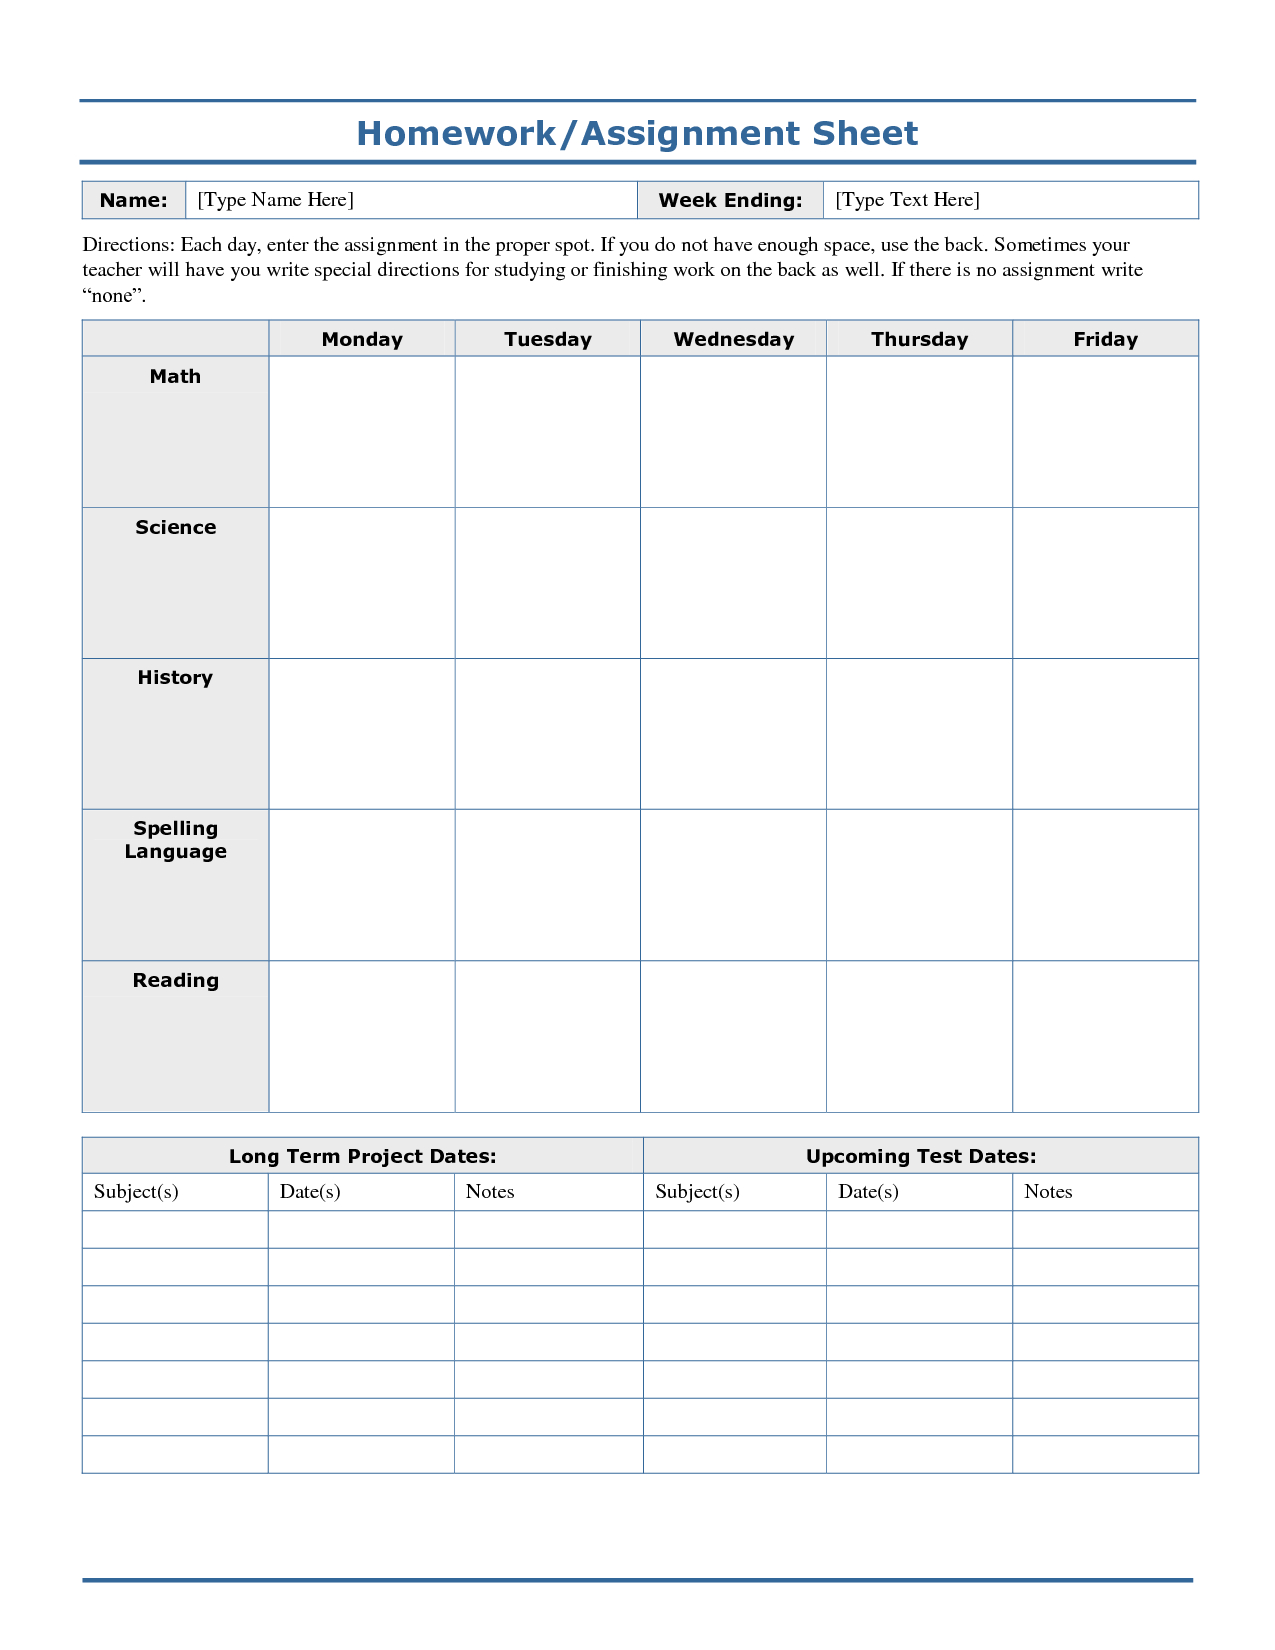 Weekly+Homework+Assignment+Sheet+Template | Logs | Homework Sheet - Free Printable Daily Assignment Sheets